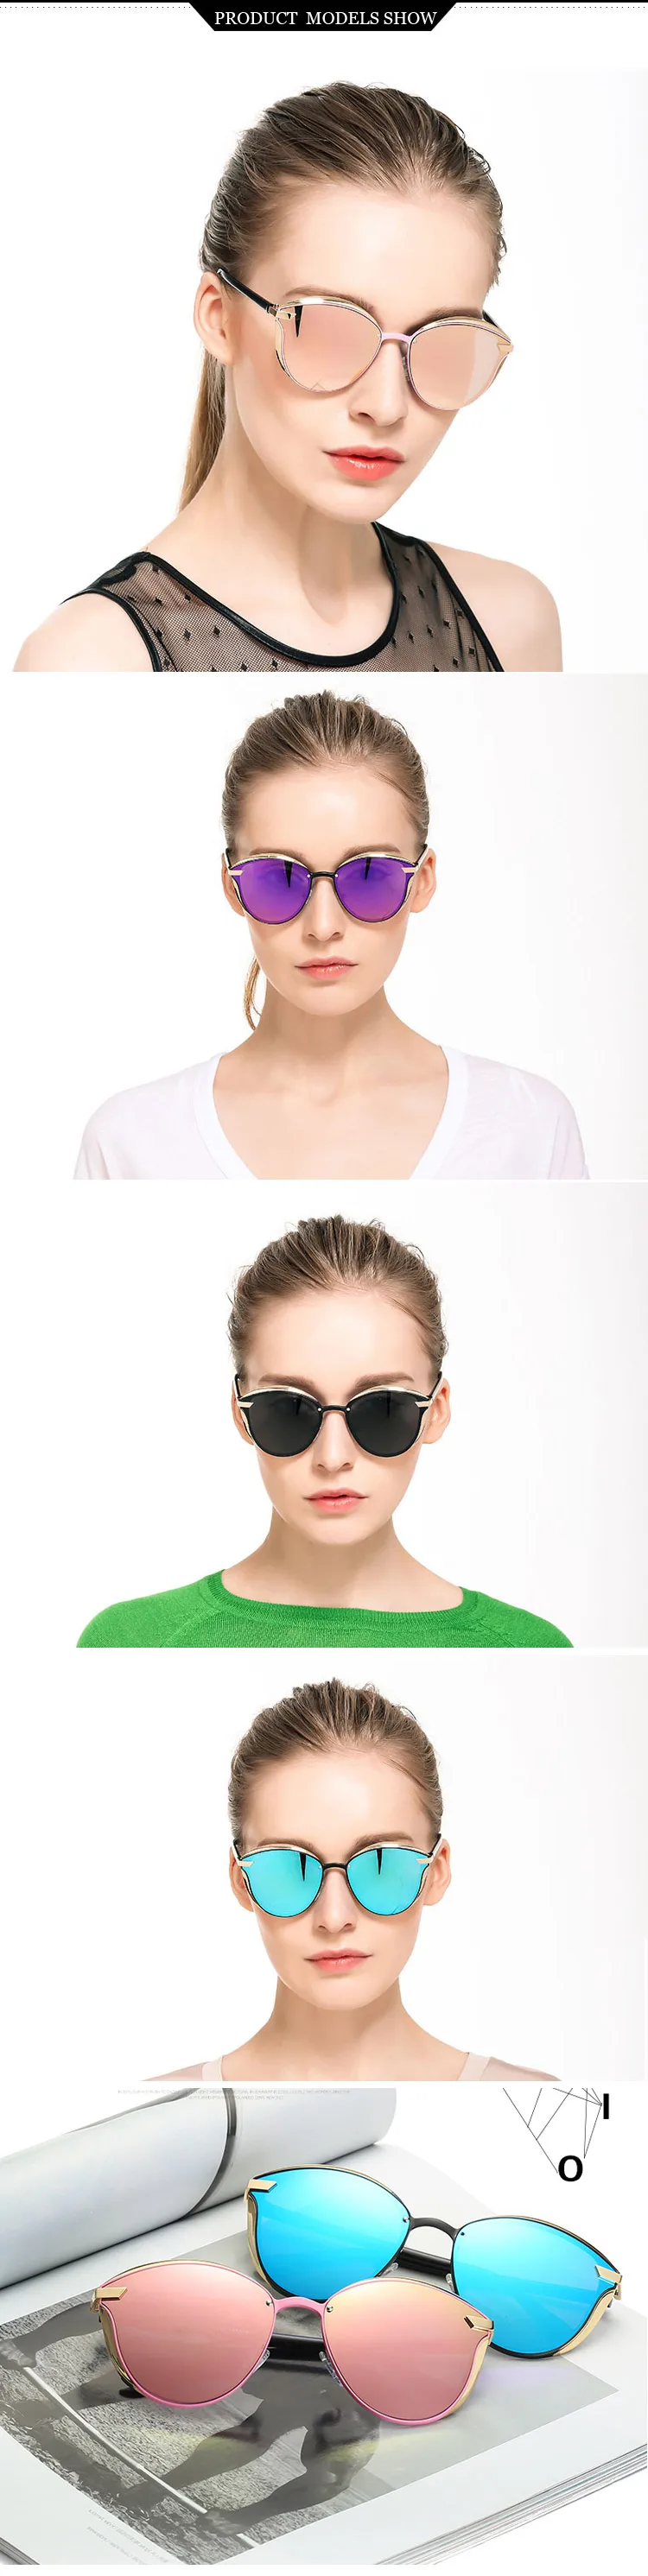 FZKYNY роскошные женские поляризованные солнцезащитные очки Женские Классические Винтажные Солнцезащитные очки авиаторы Ретро брендовые дизайнерские женские круглые очки